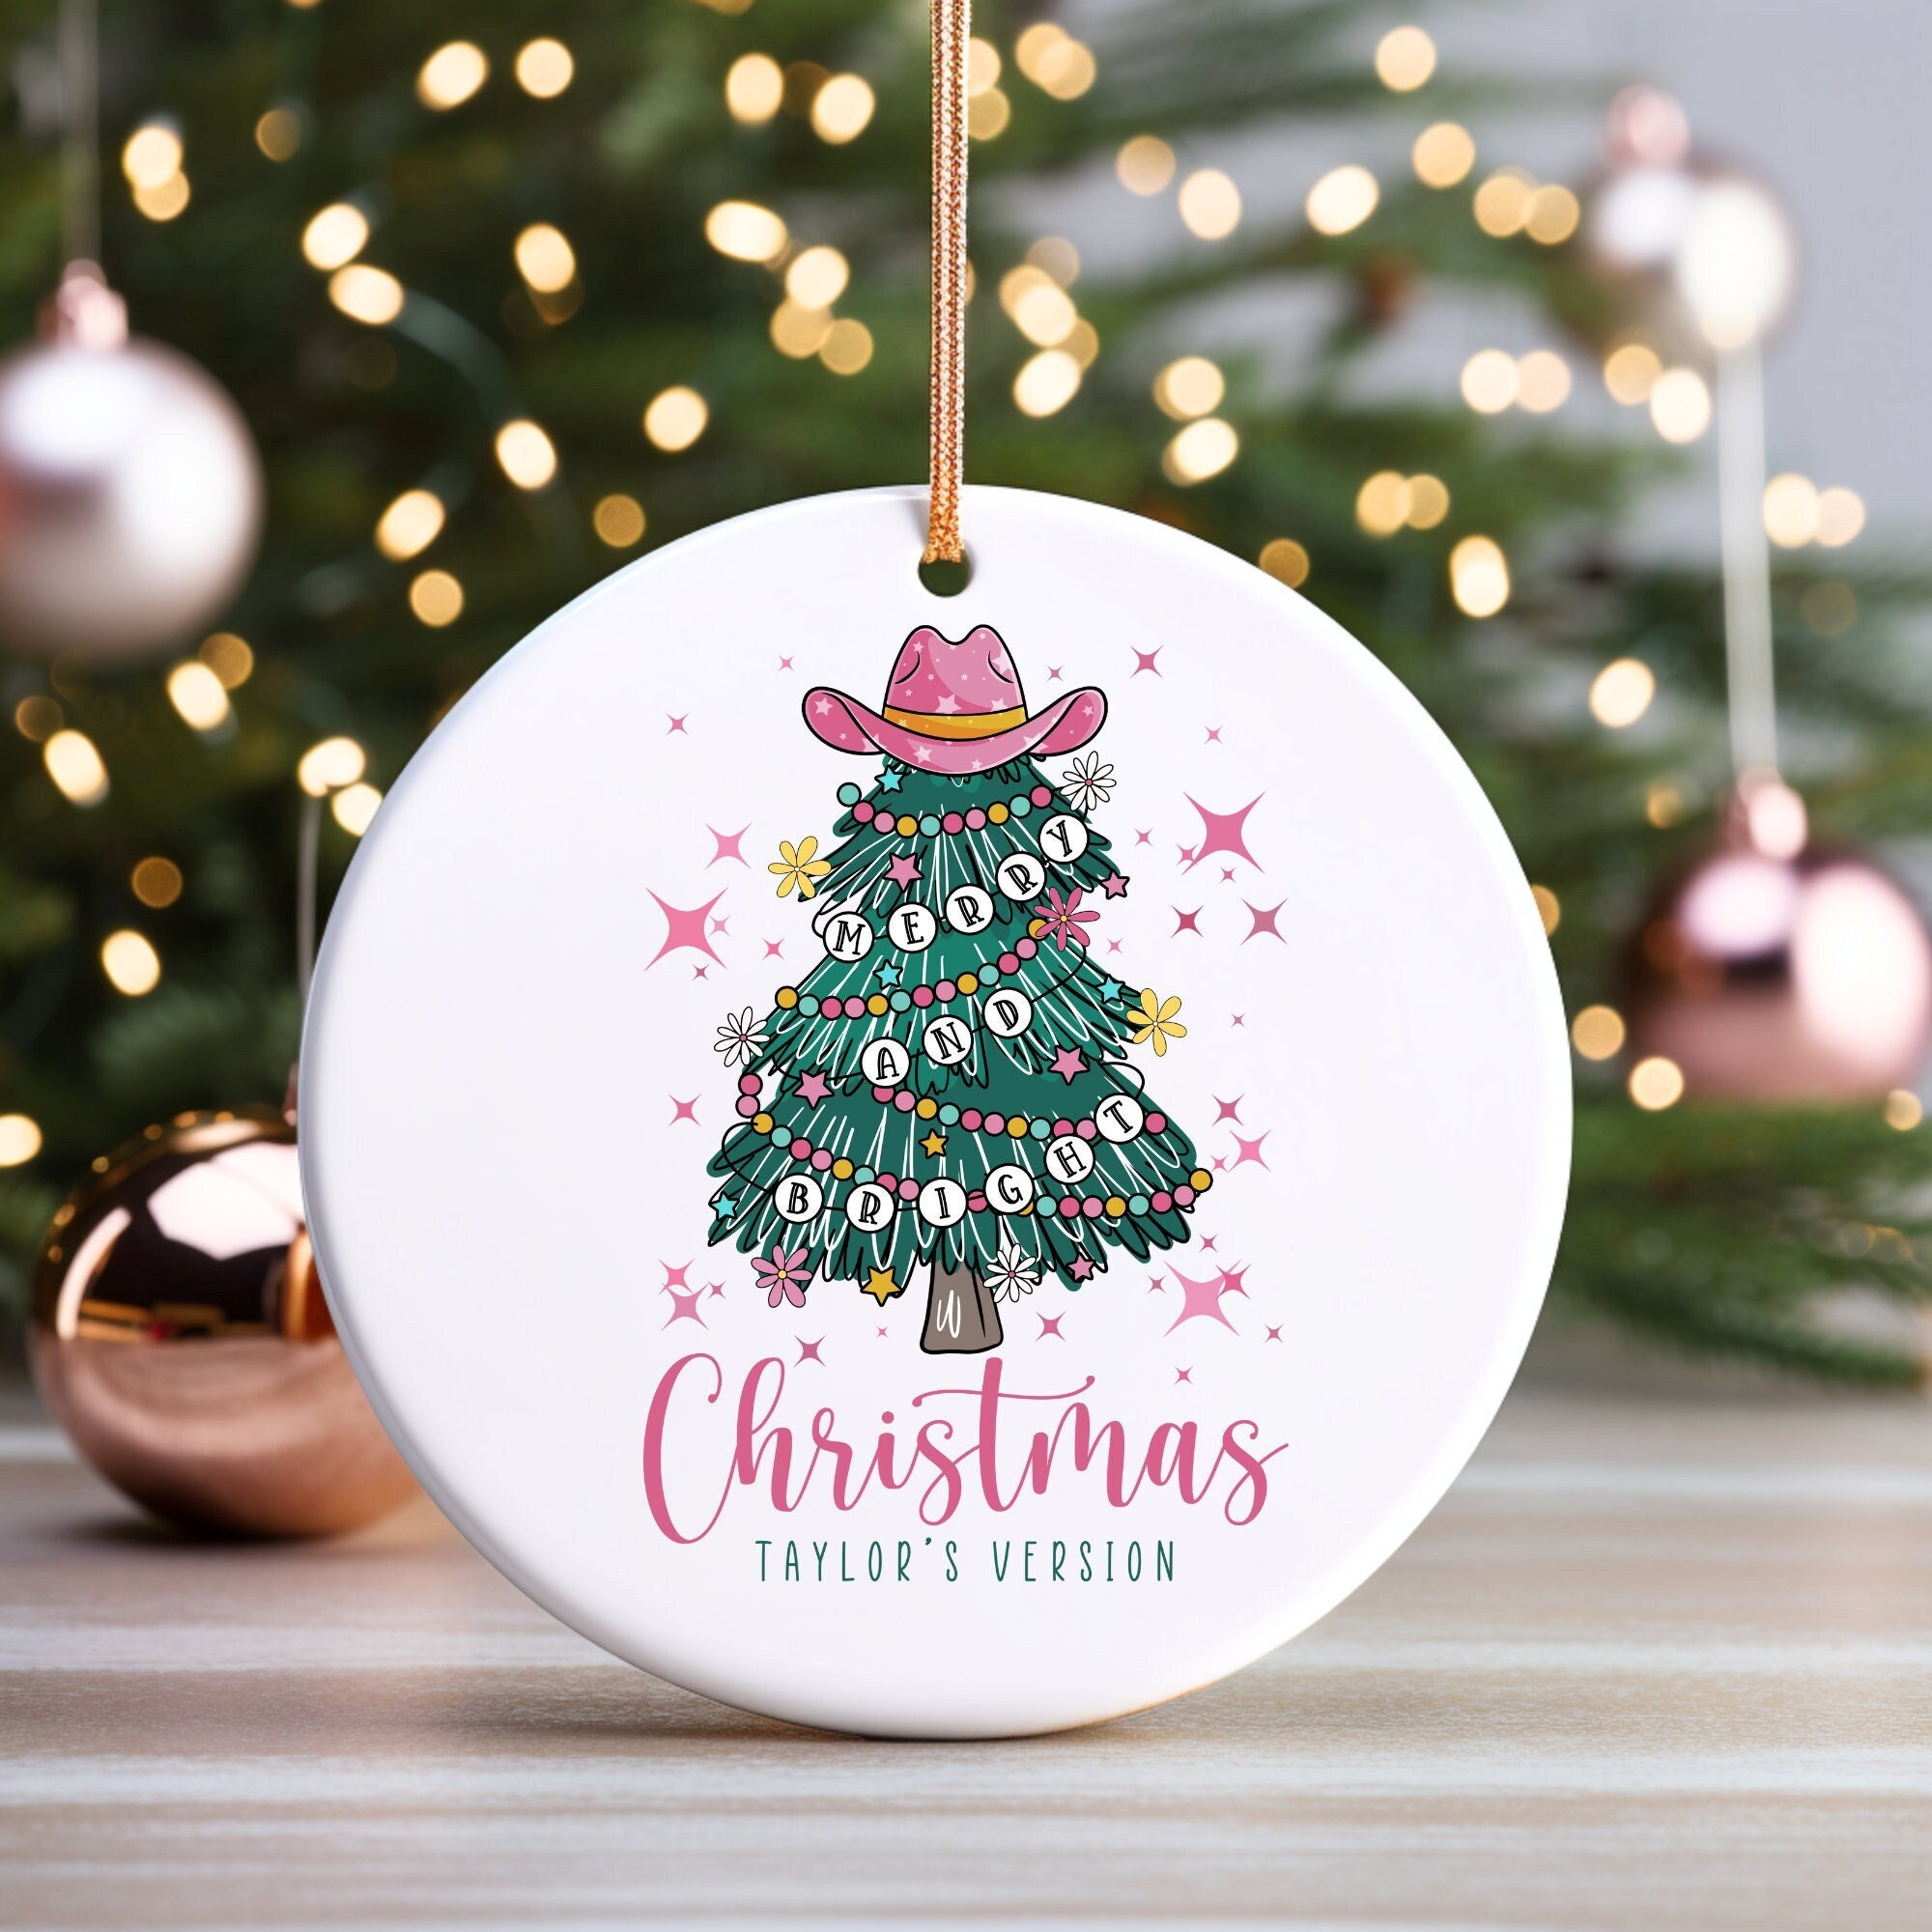 Taylor taylor version Christmas Ornament 2024 sold by Deepa Nair | SKU ...